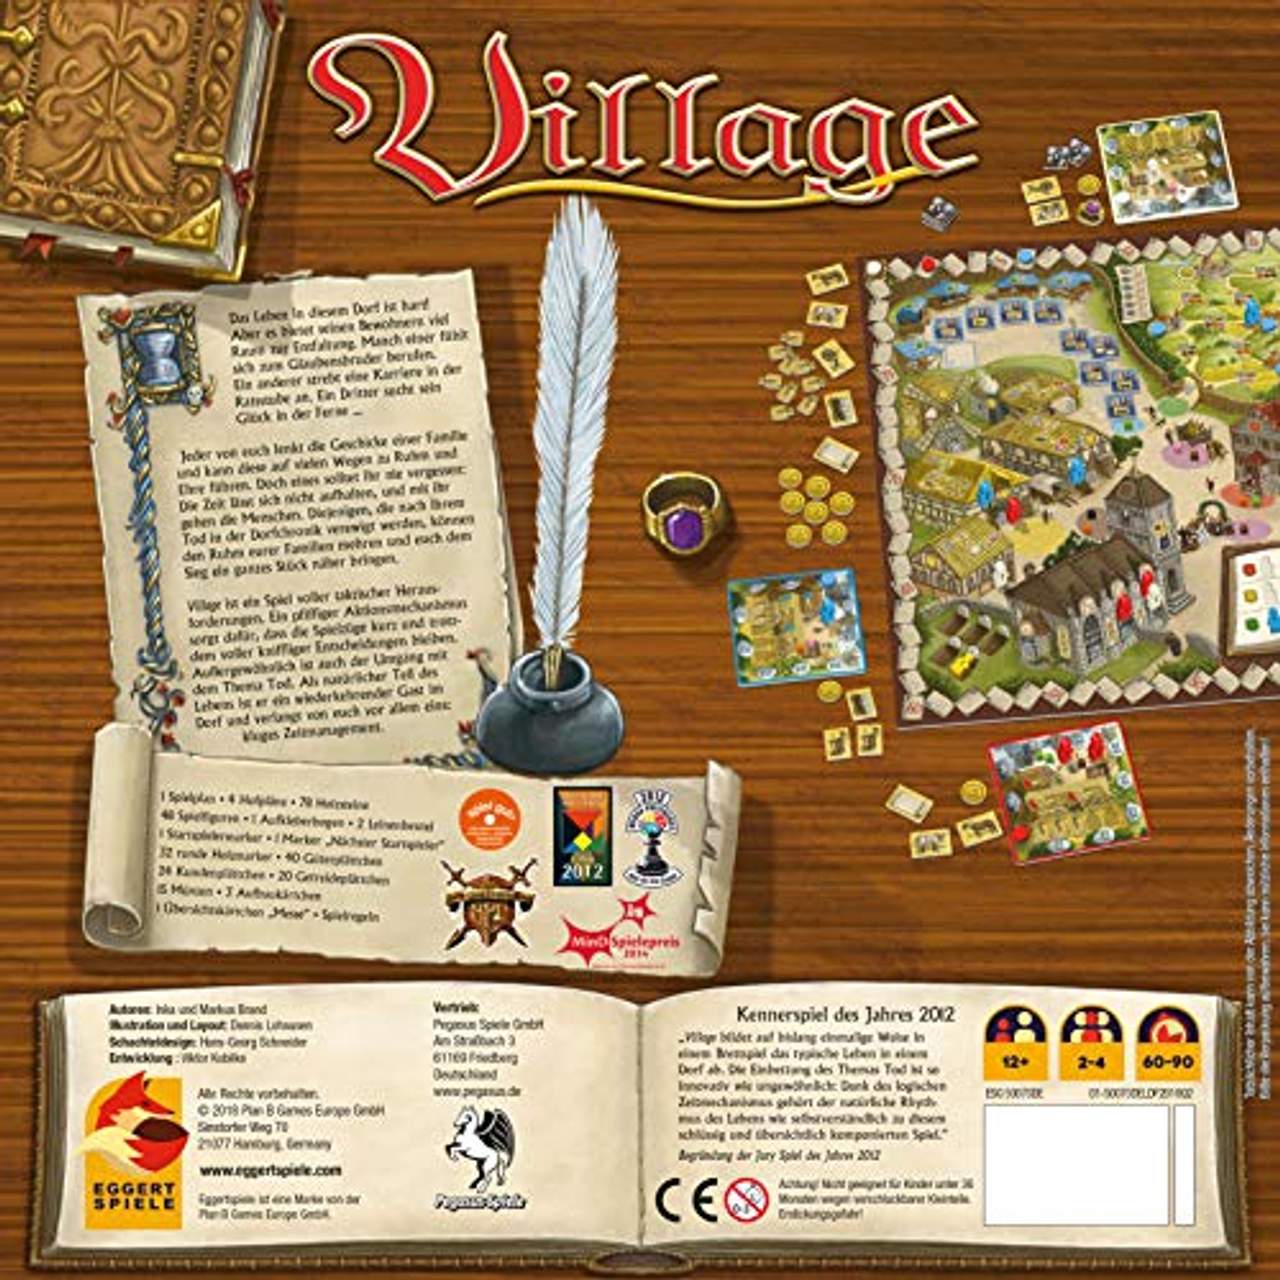 Village, Kennerspiel des Jahres 2012